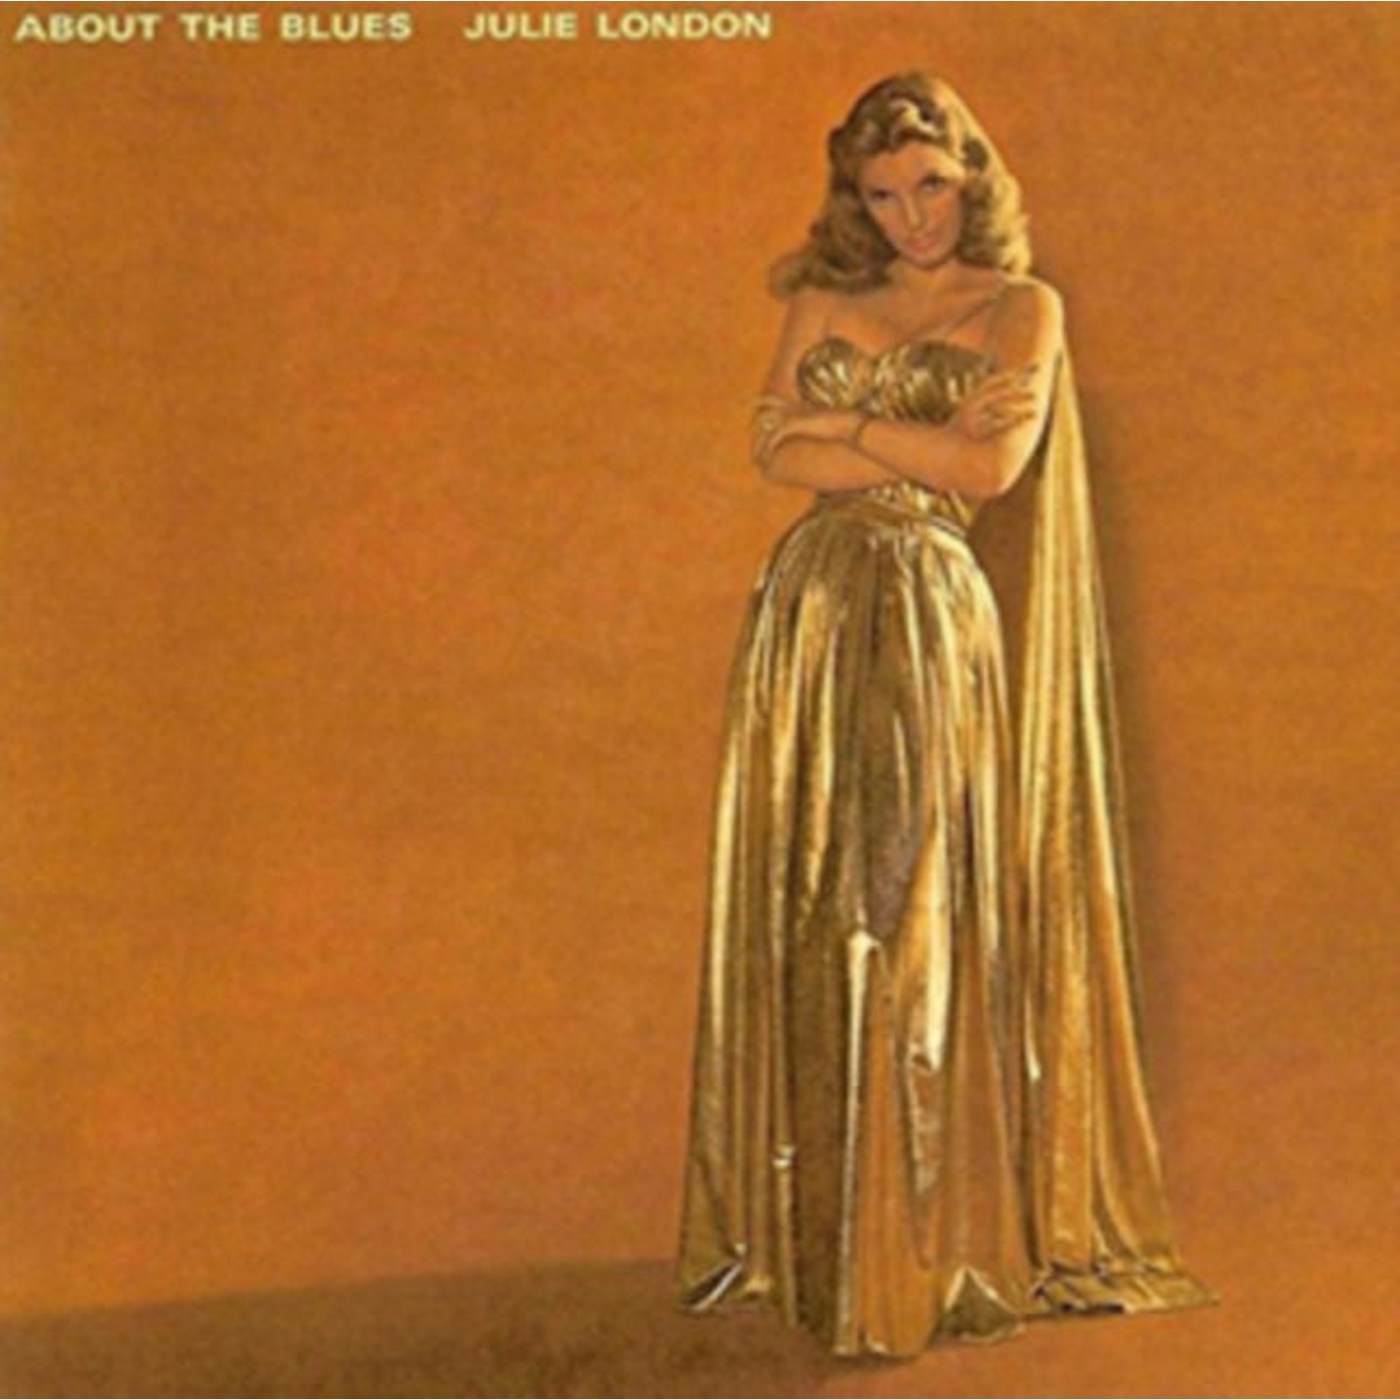 Julie London LP Vinyl Record - About The Blues